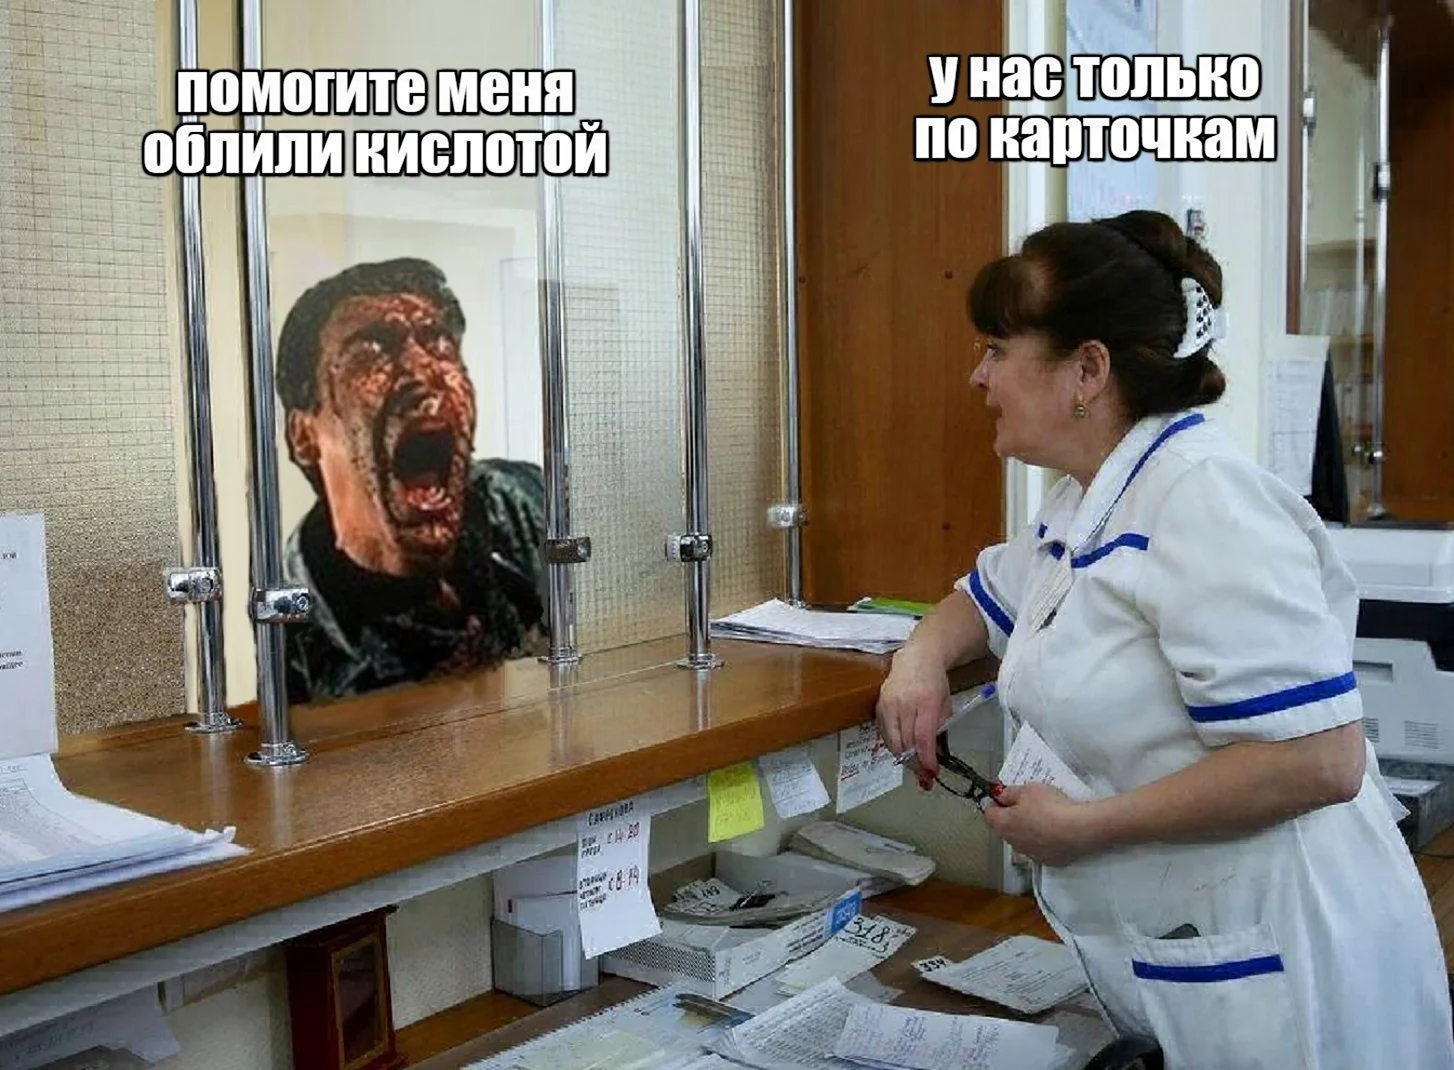 Мемы про регистратуру в поликлинике